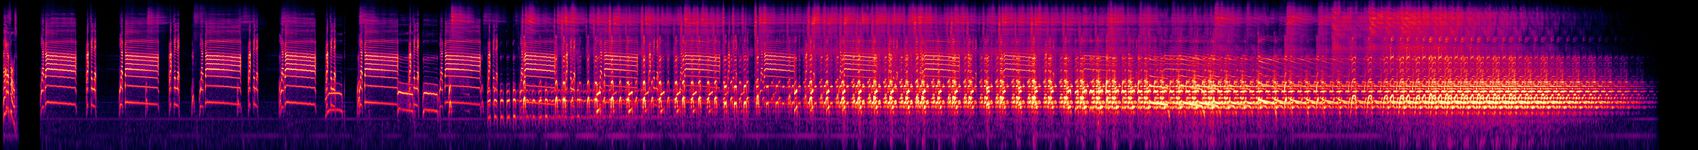 13 Radiophone Texte - 04. Niagaaaaaaaaaaaaaaaa - Spectrogram.jpg